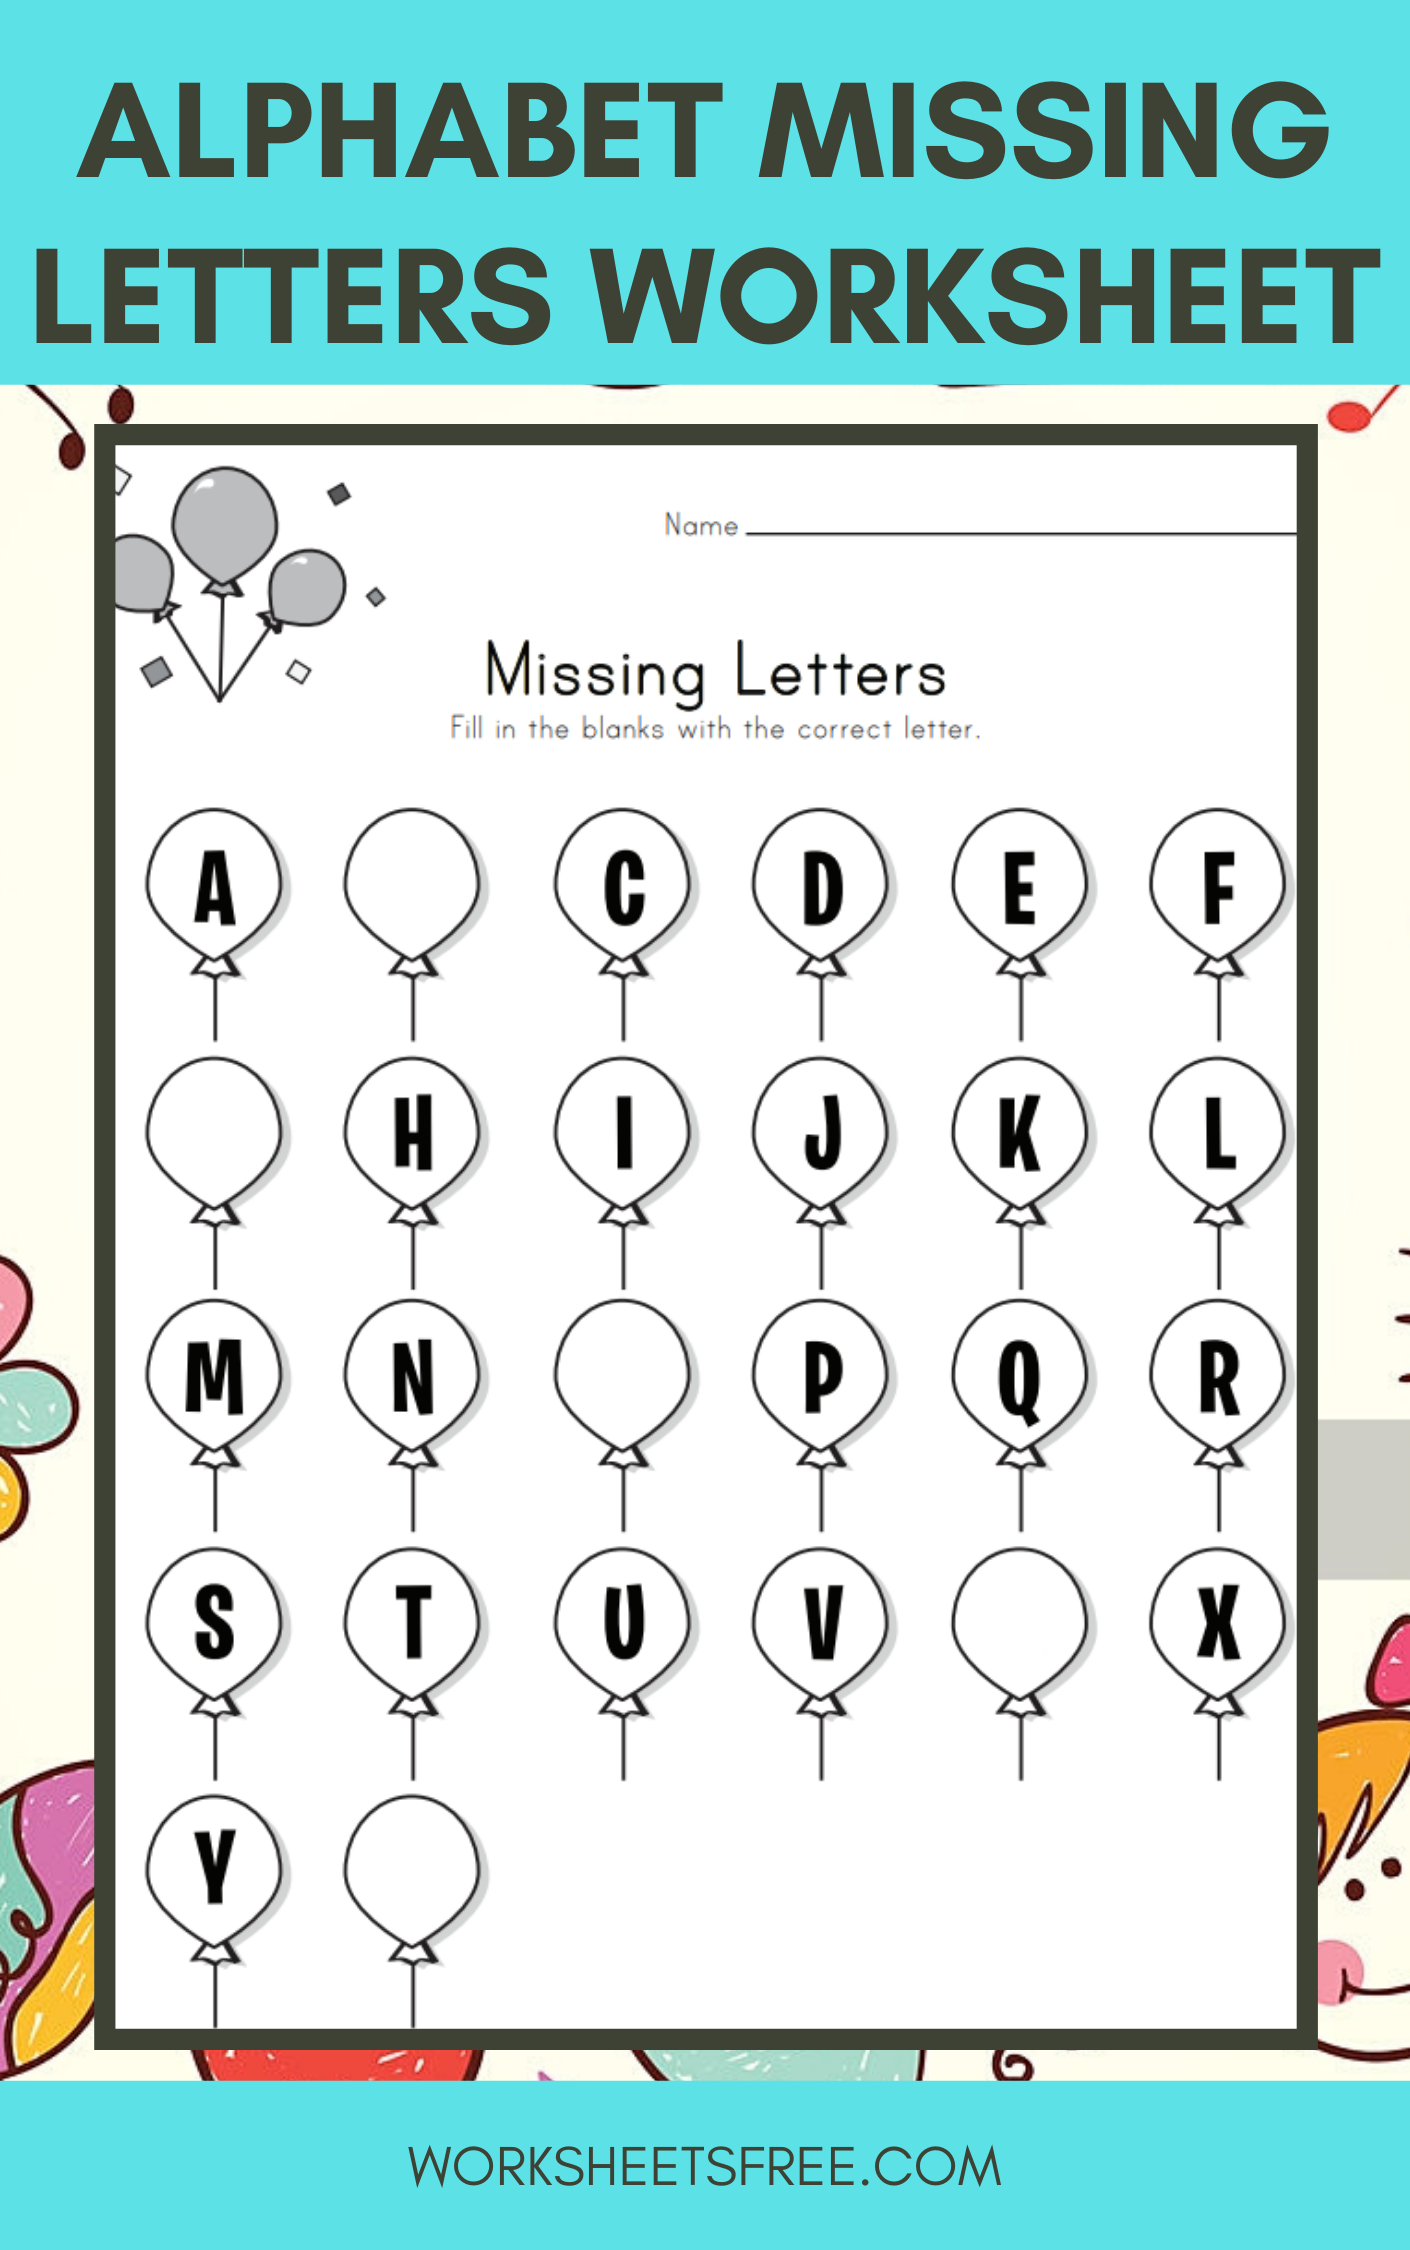 Alphabet-Missing-Letters-Worksheet | Worksheets Free